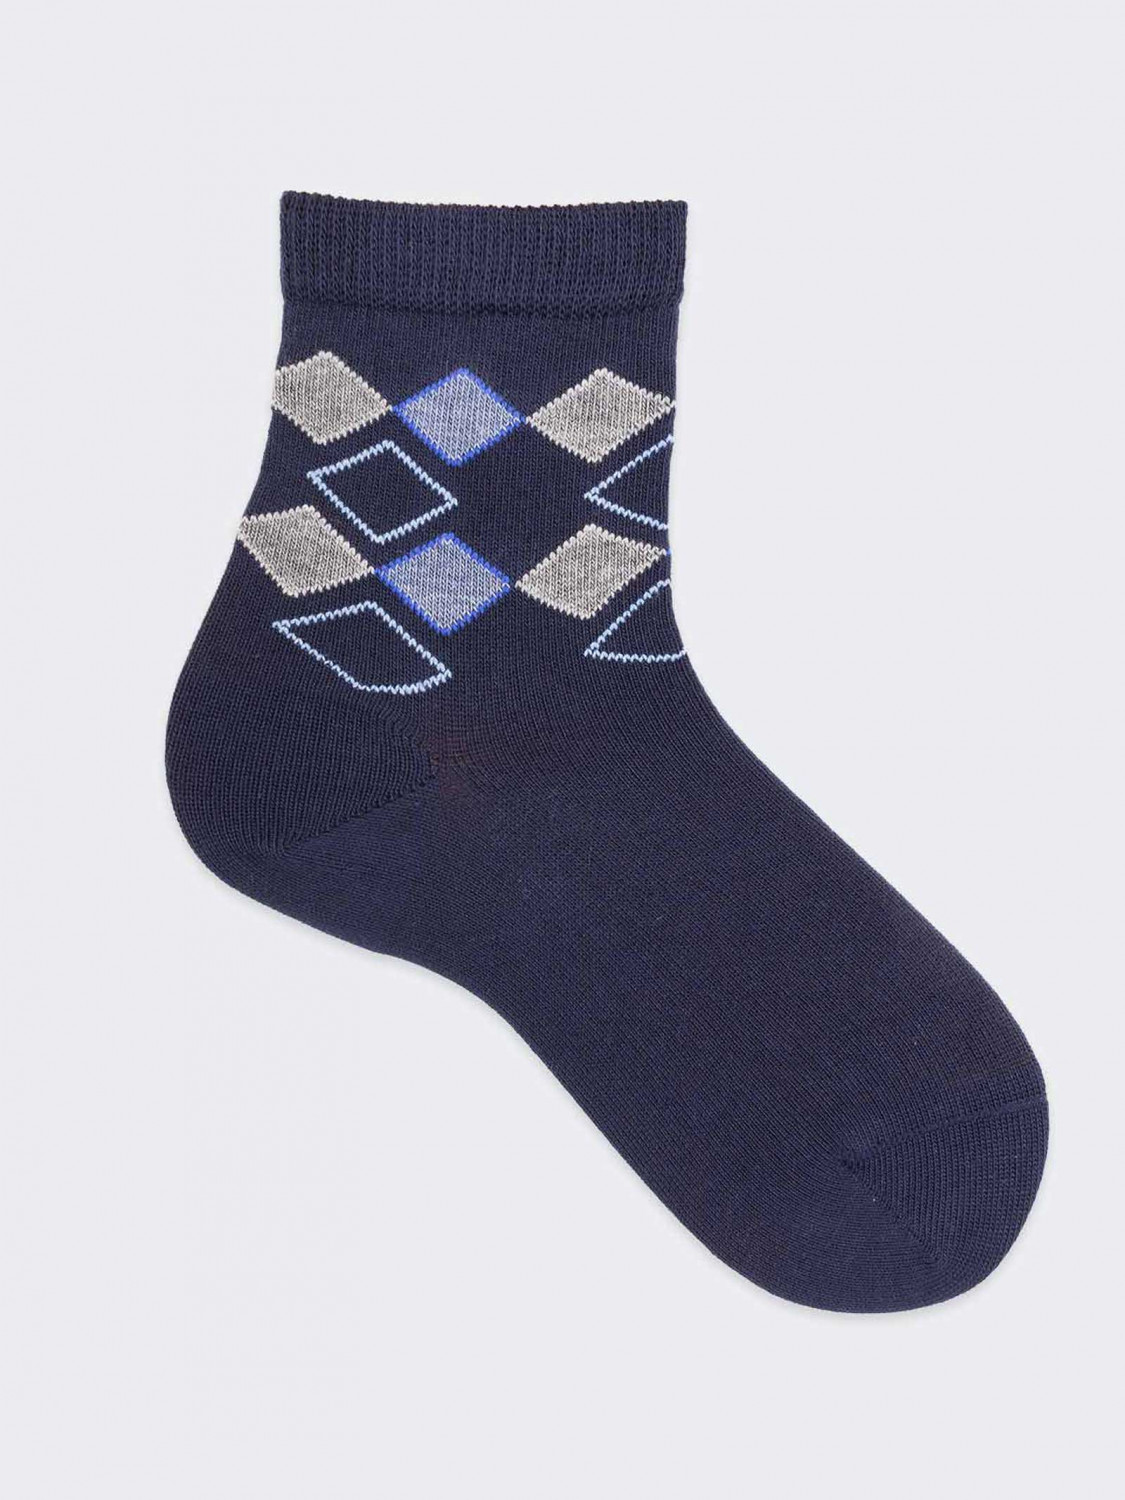 Rhombus pattern Kids Crew socks